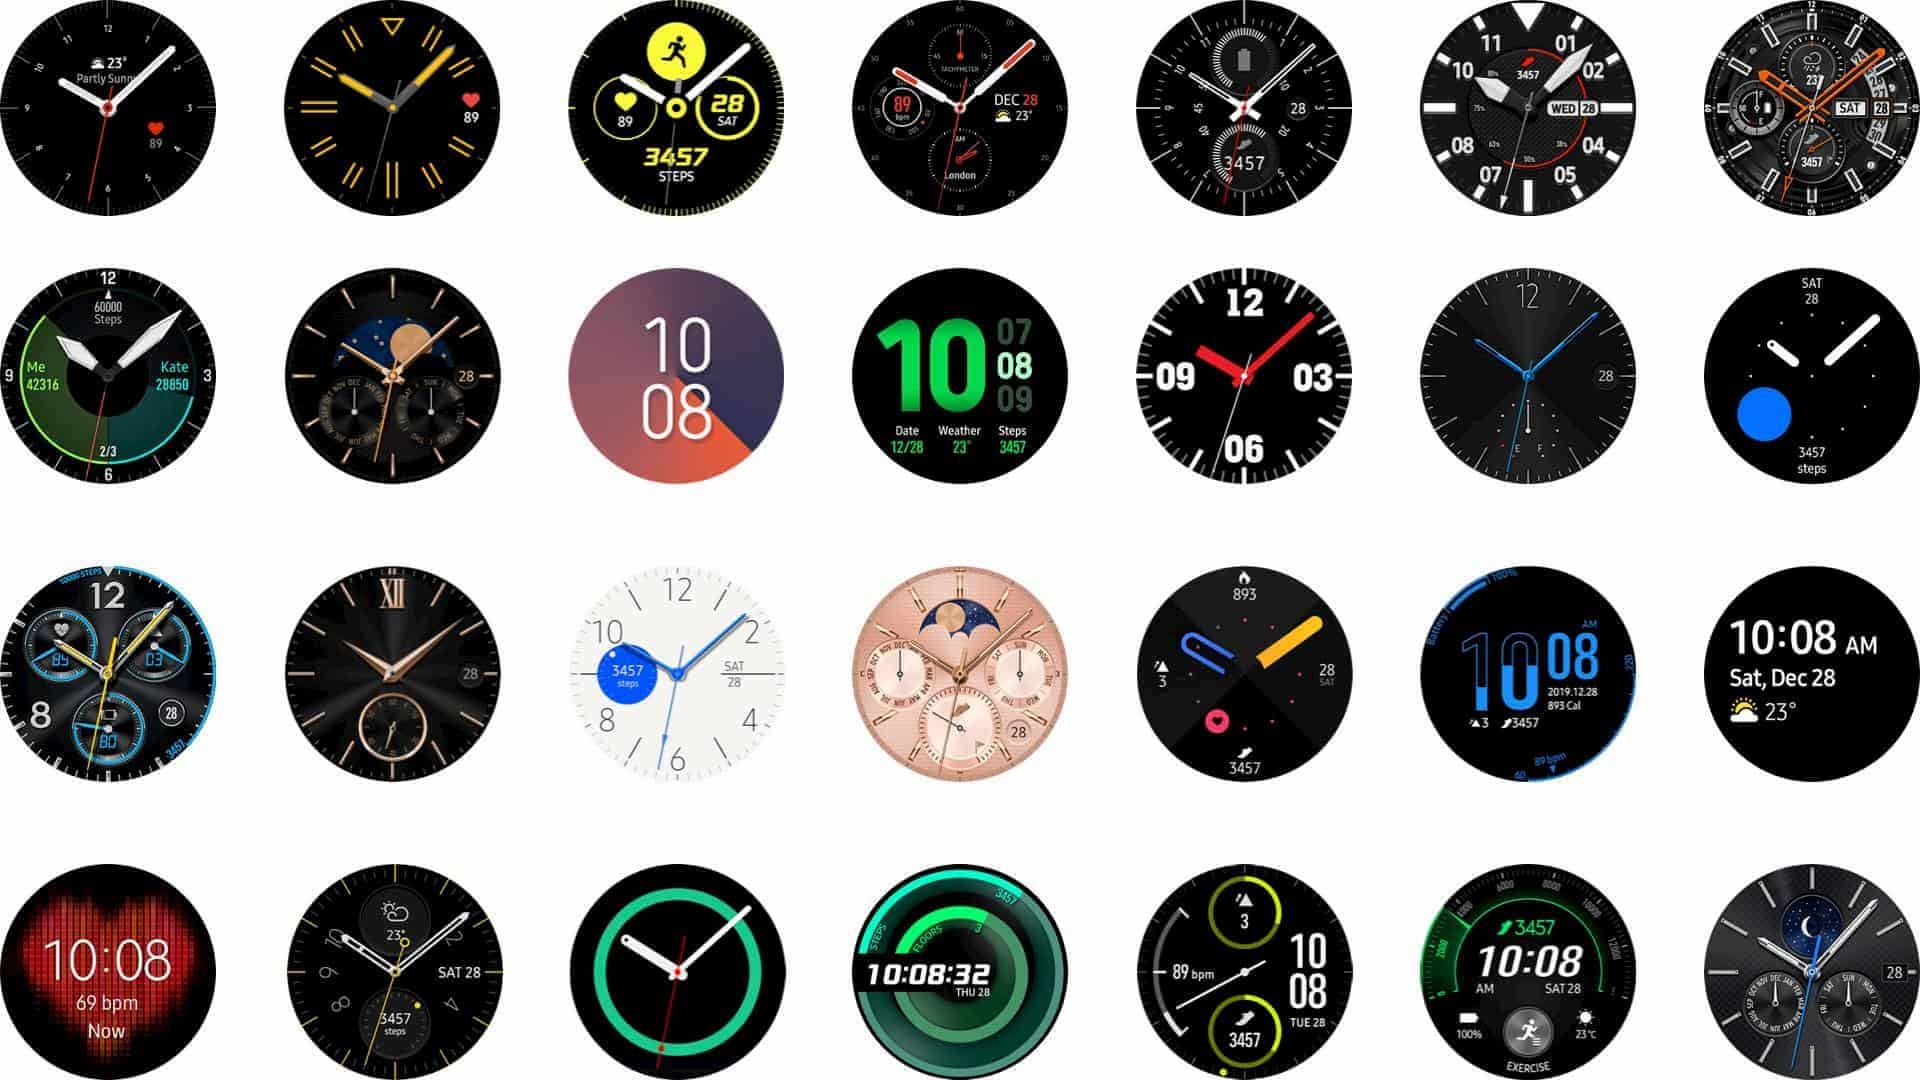 Бесплатный циферблат для galaxy watch. Самсунг галакси вотч 4 циферблаты. Циферблаты для Samsung Galaxy watch 3. Циферблаты для самсунг Galaxy watch 4. Циферблаты для Samsung Galaxy watch 5.